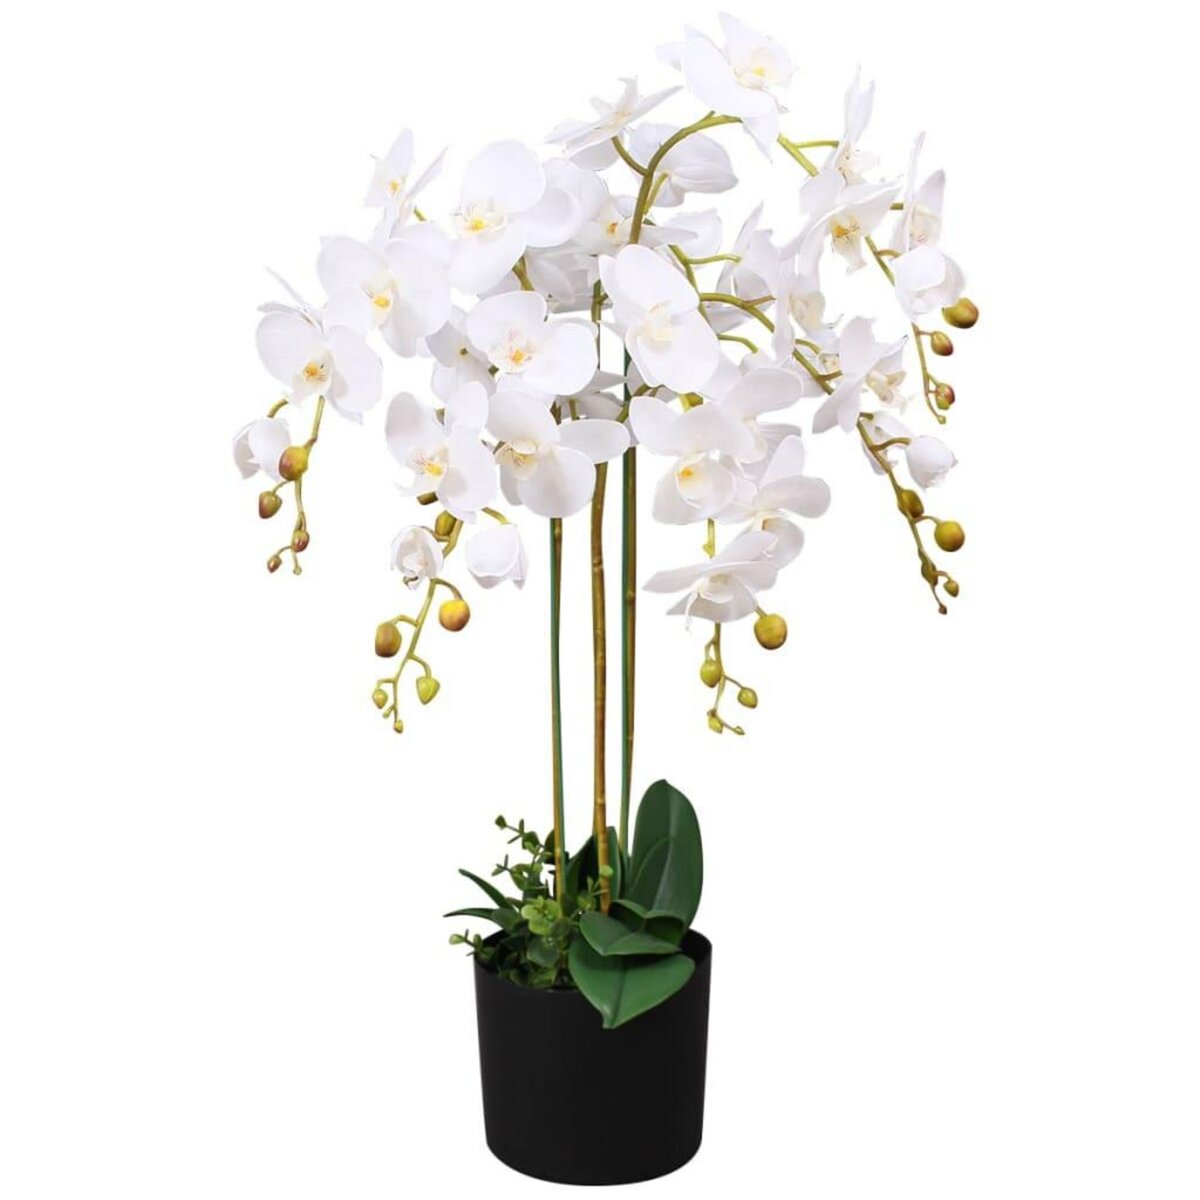 Orchidée avec pot blanc